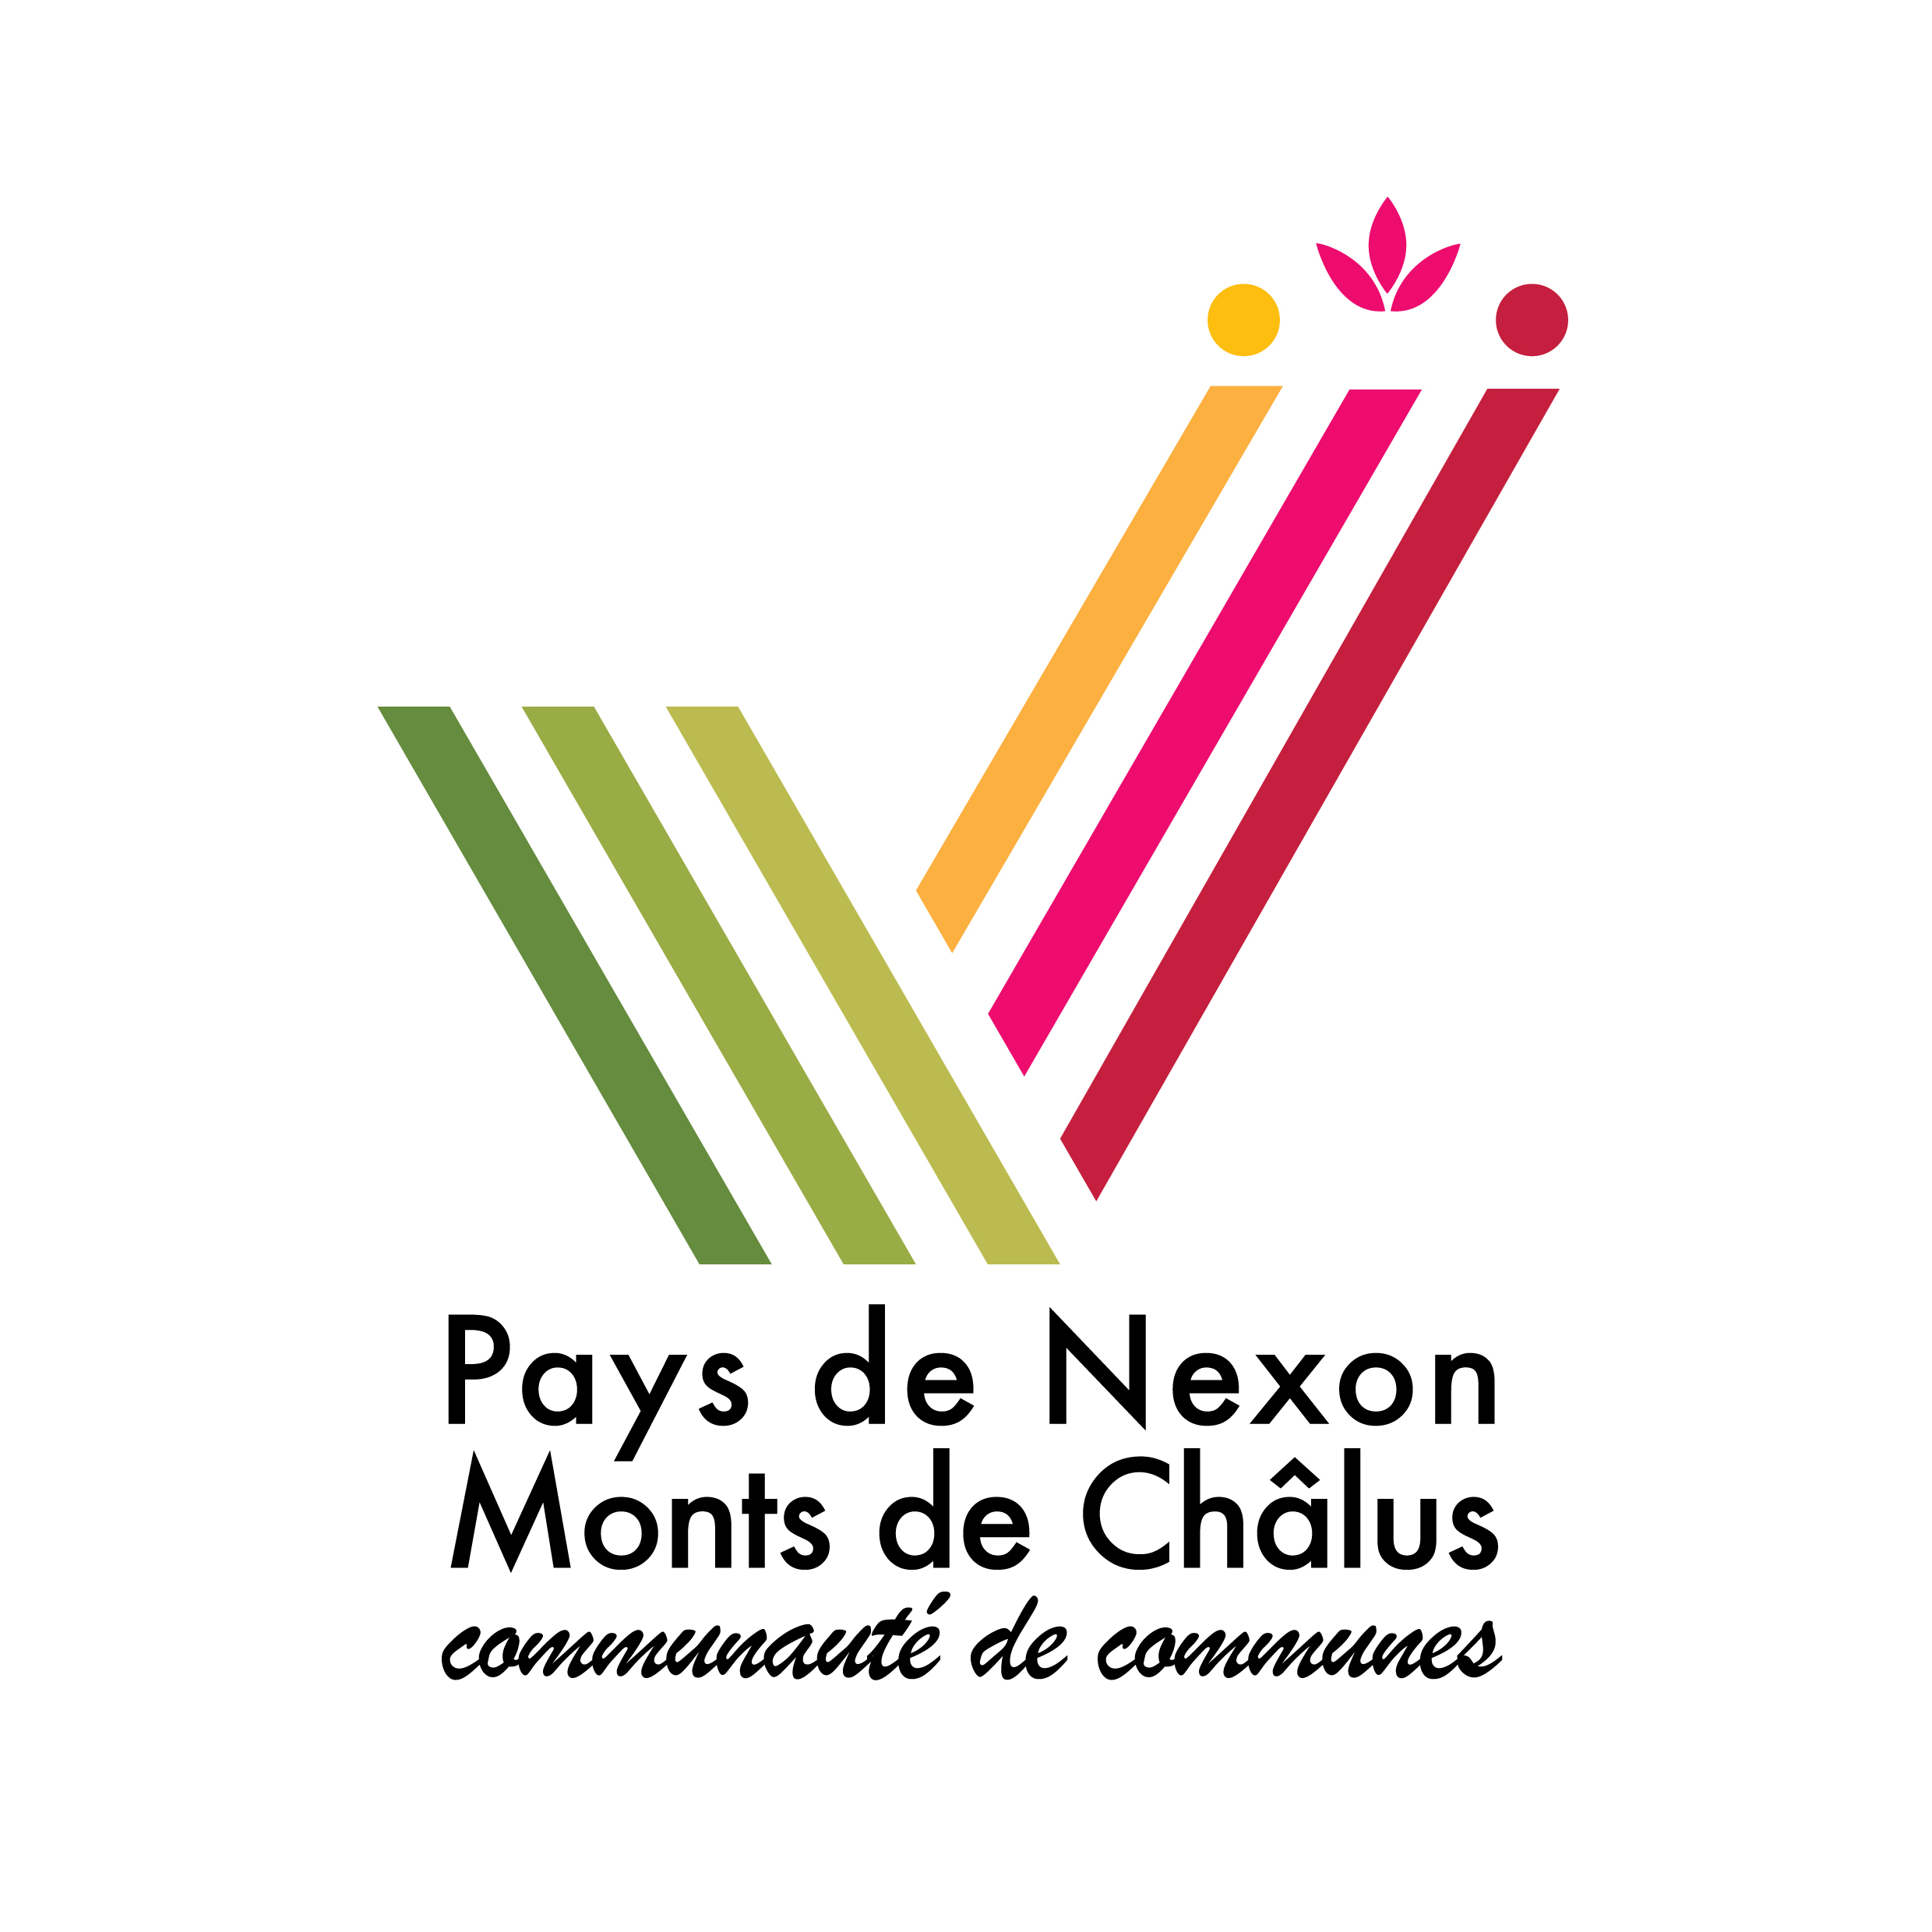 CC Pays de Nexon - Monts de Châlus